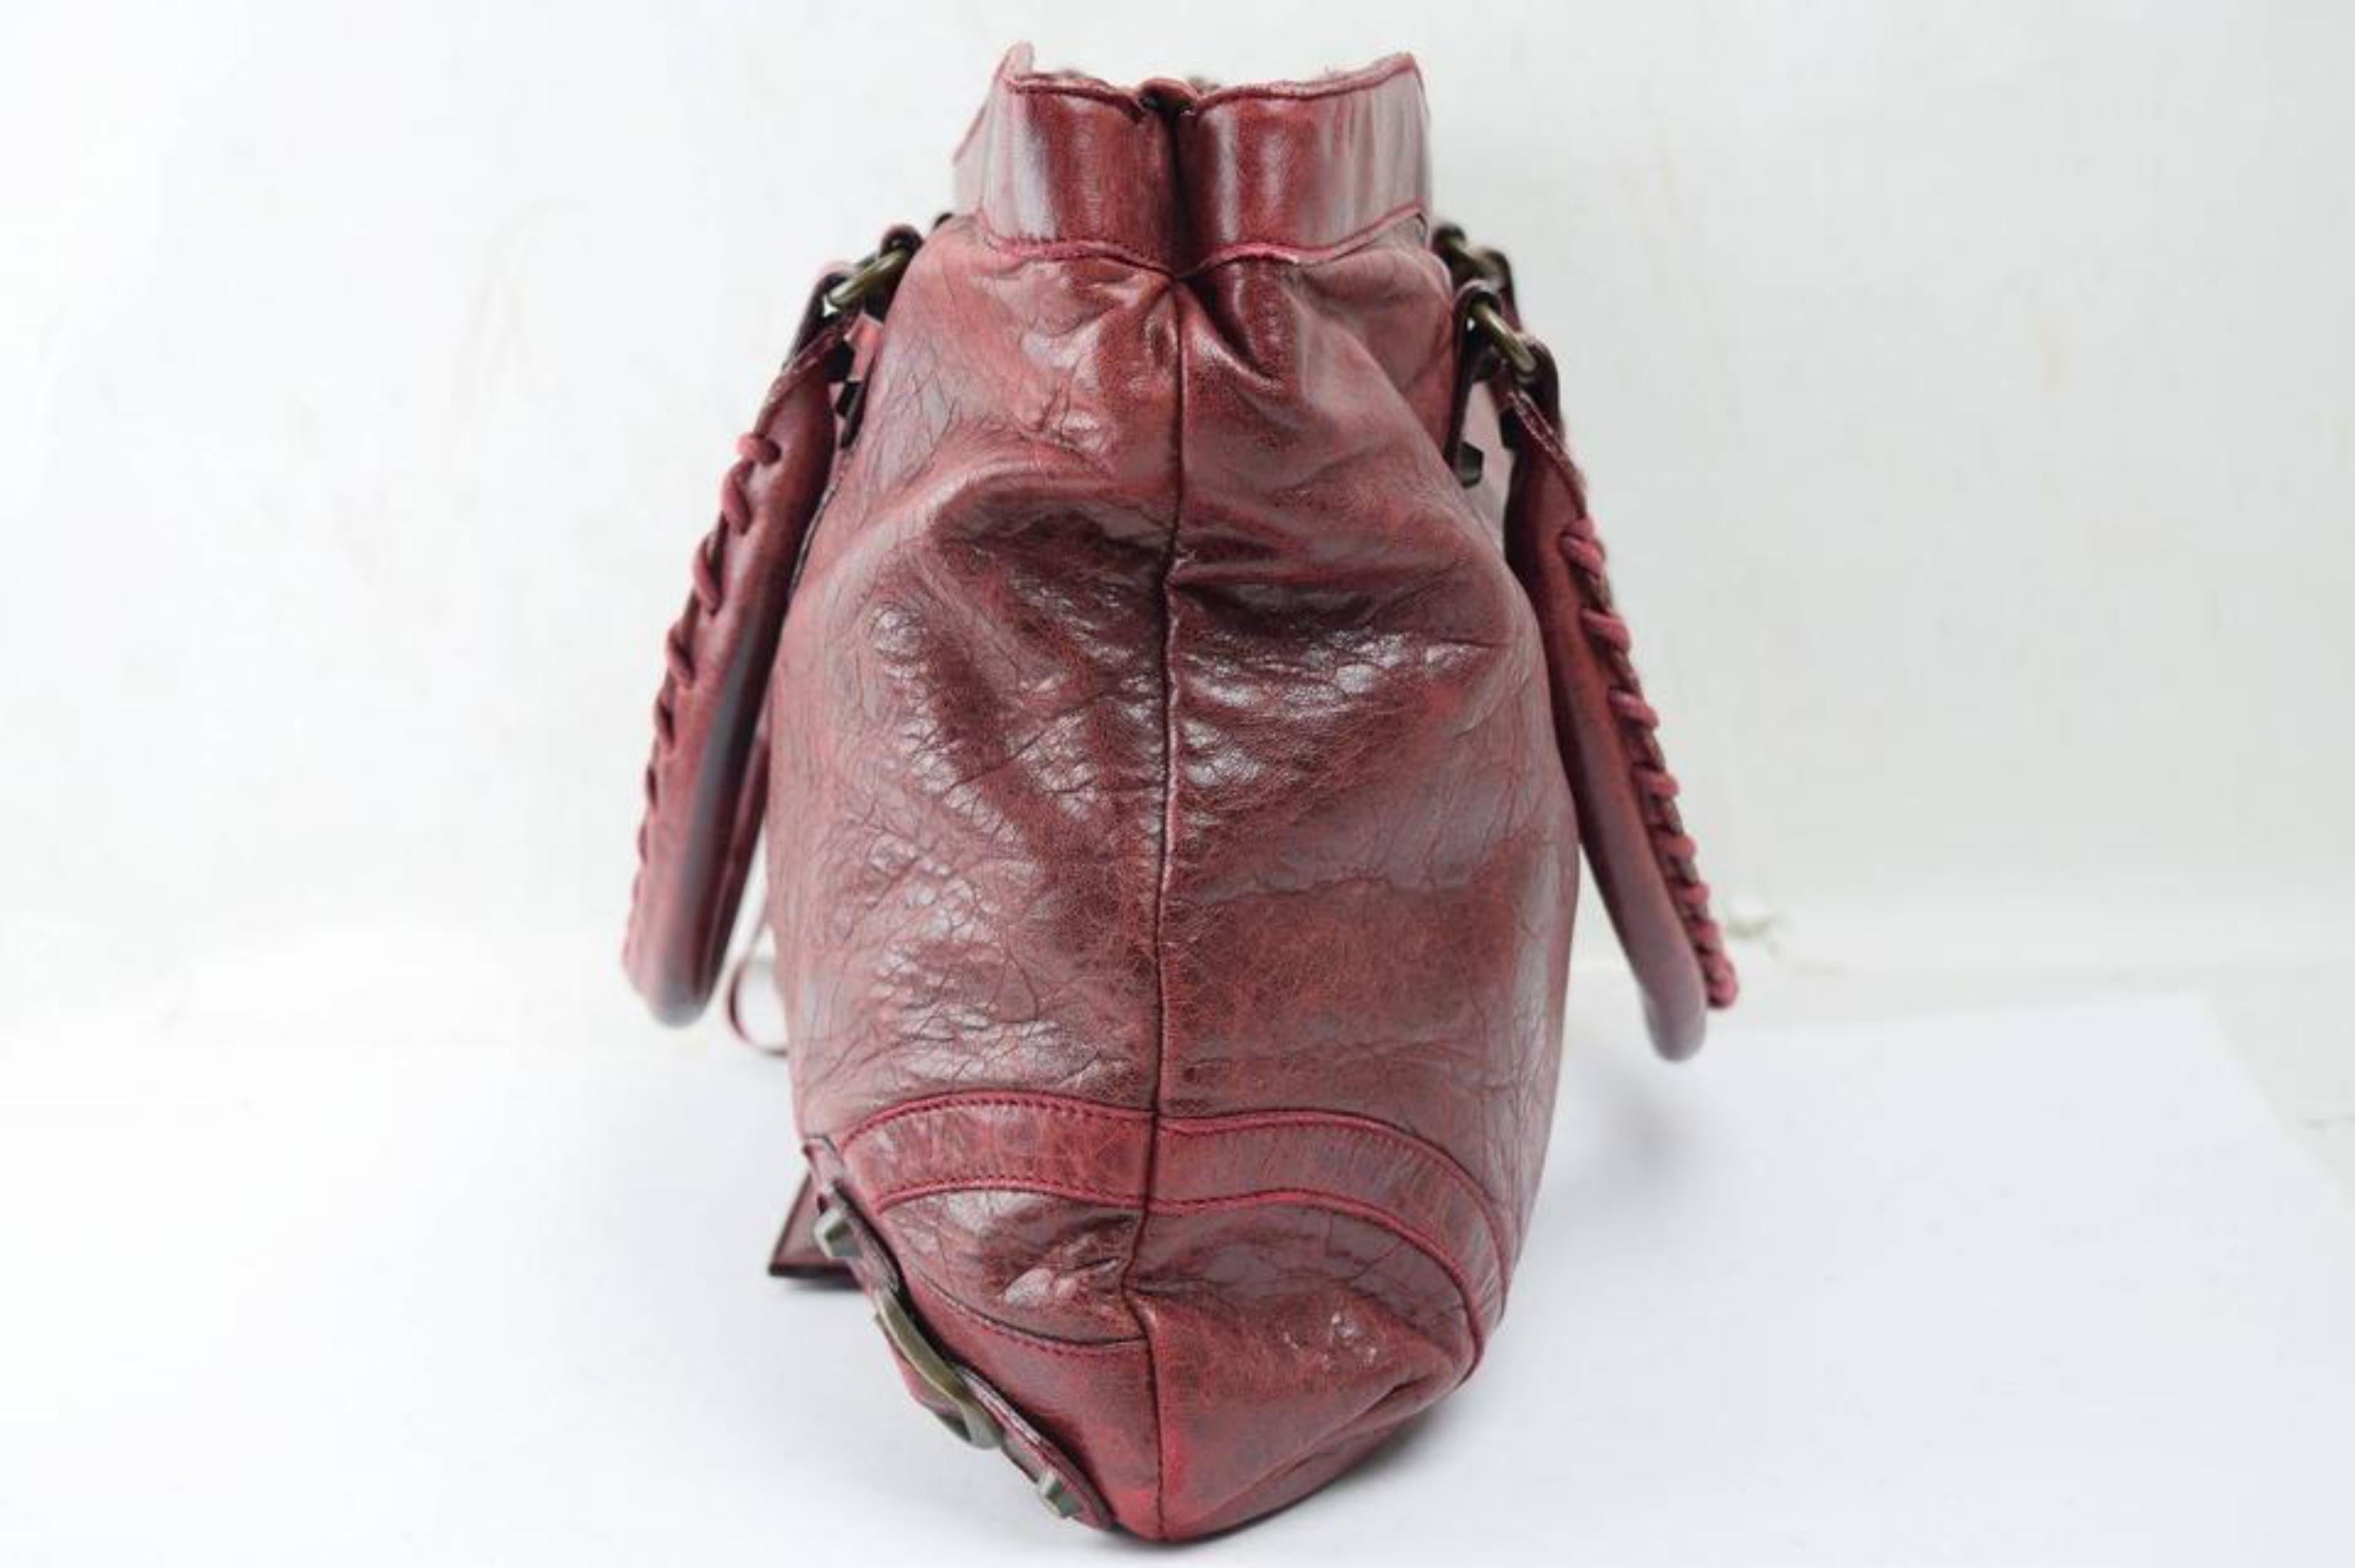 Balenciaga Bordeaux Chevre Purse Handbag 866829 Red Leather Satchel For Sale 1